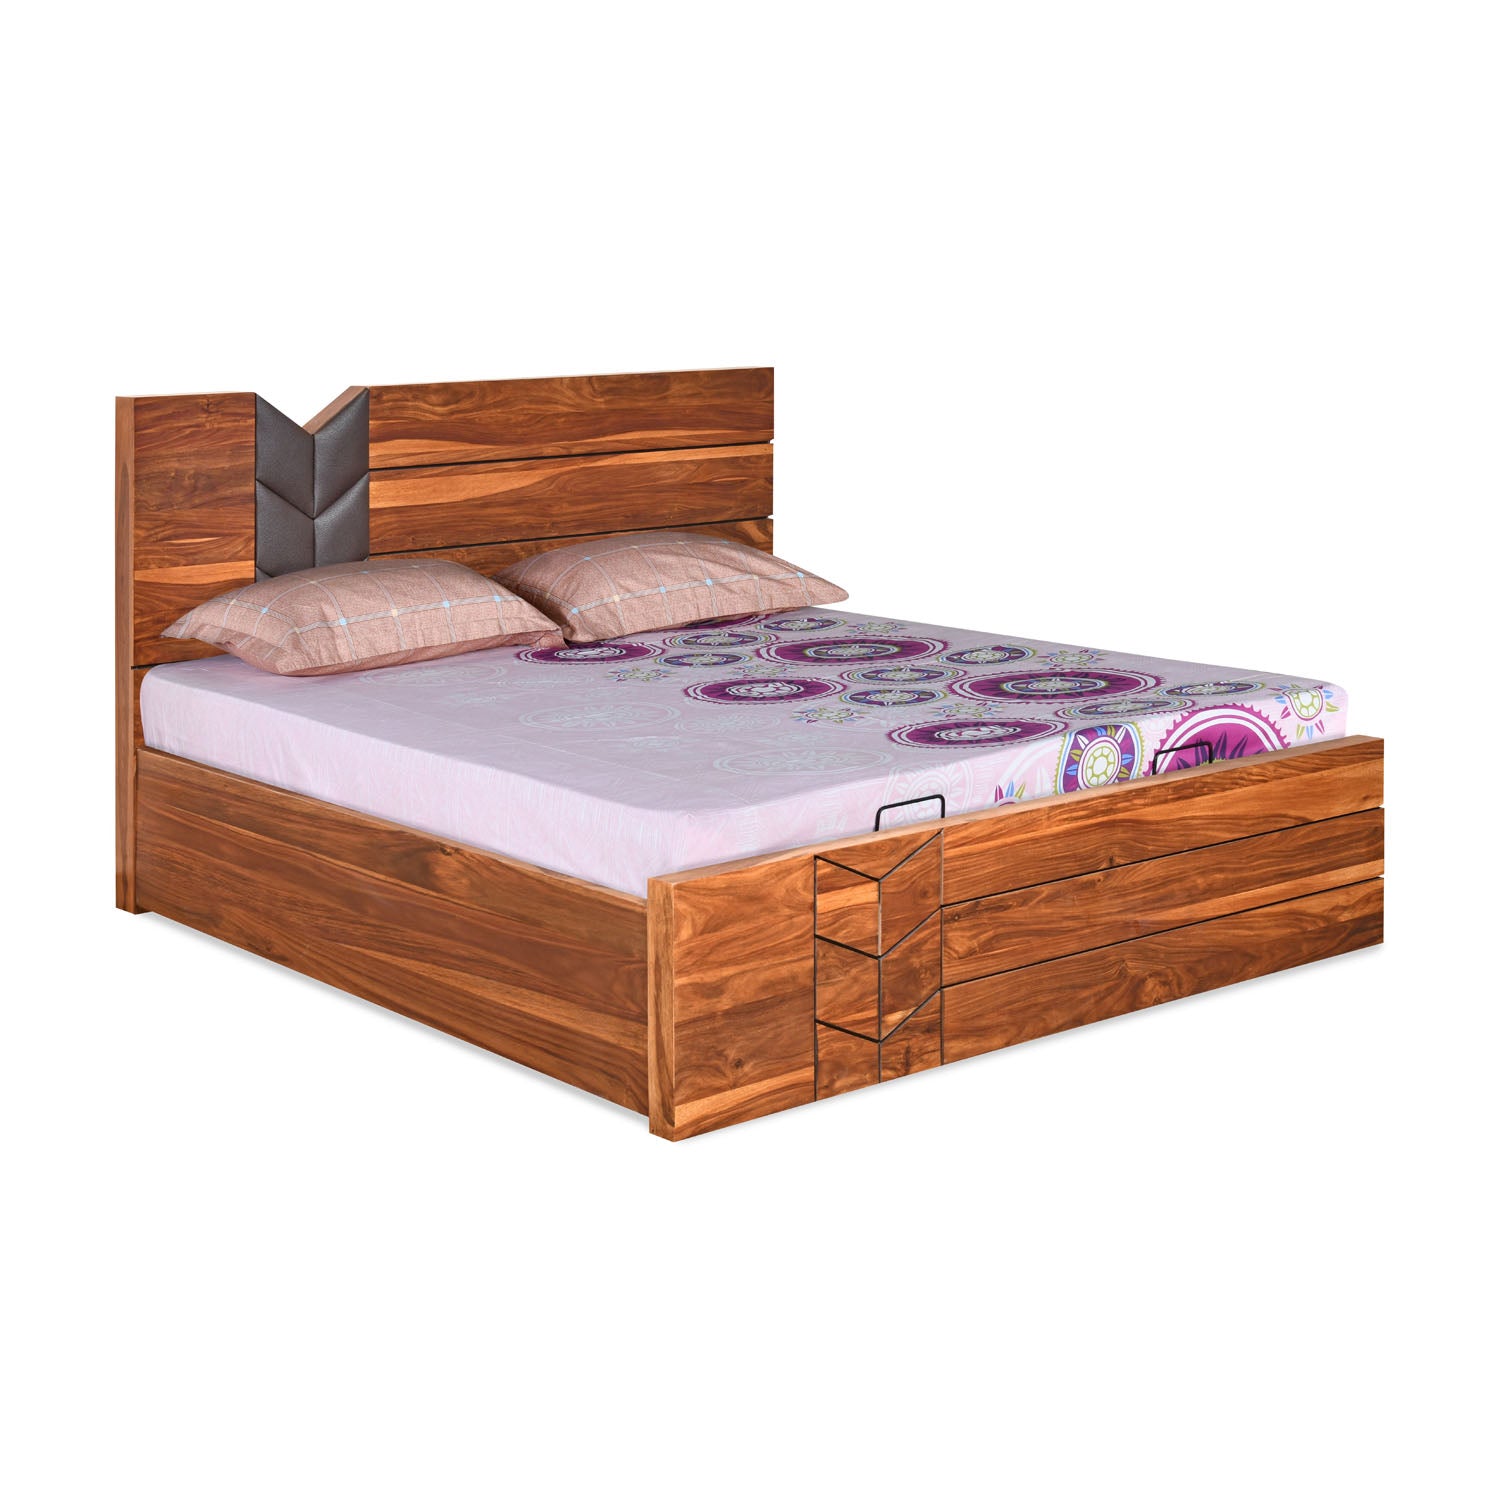 Ankara King Bed with Hydraulic Storage (Walnut)